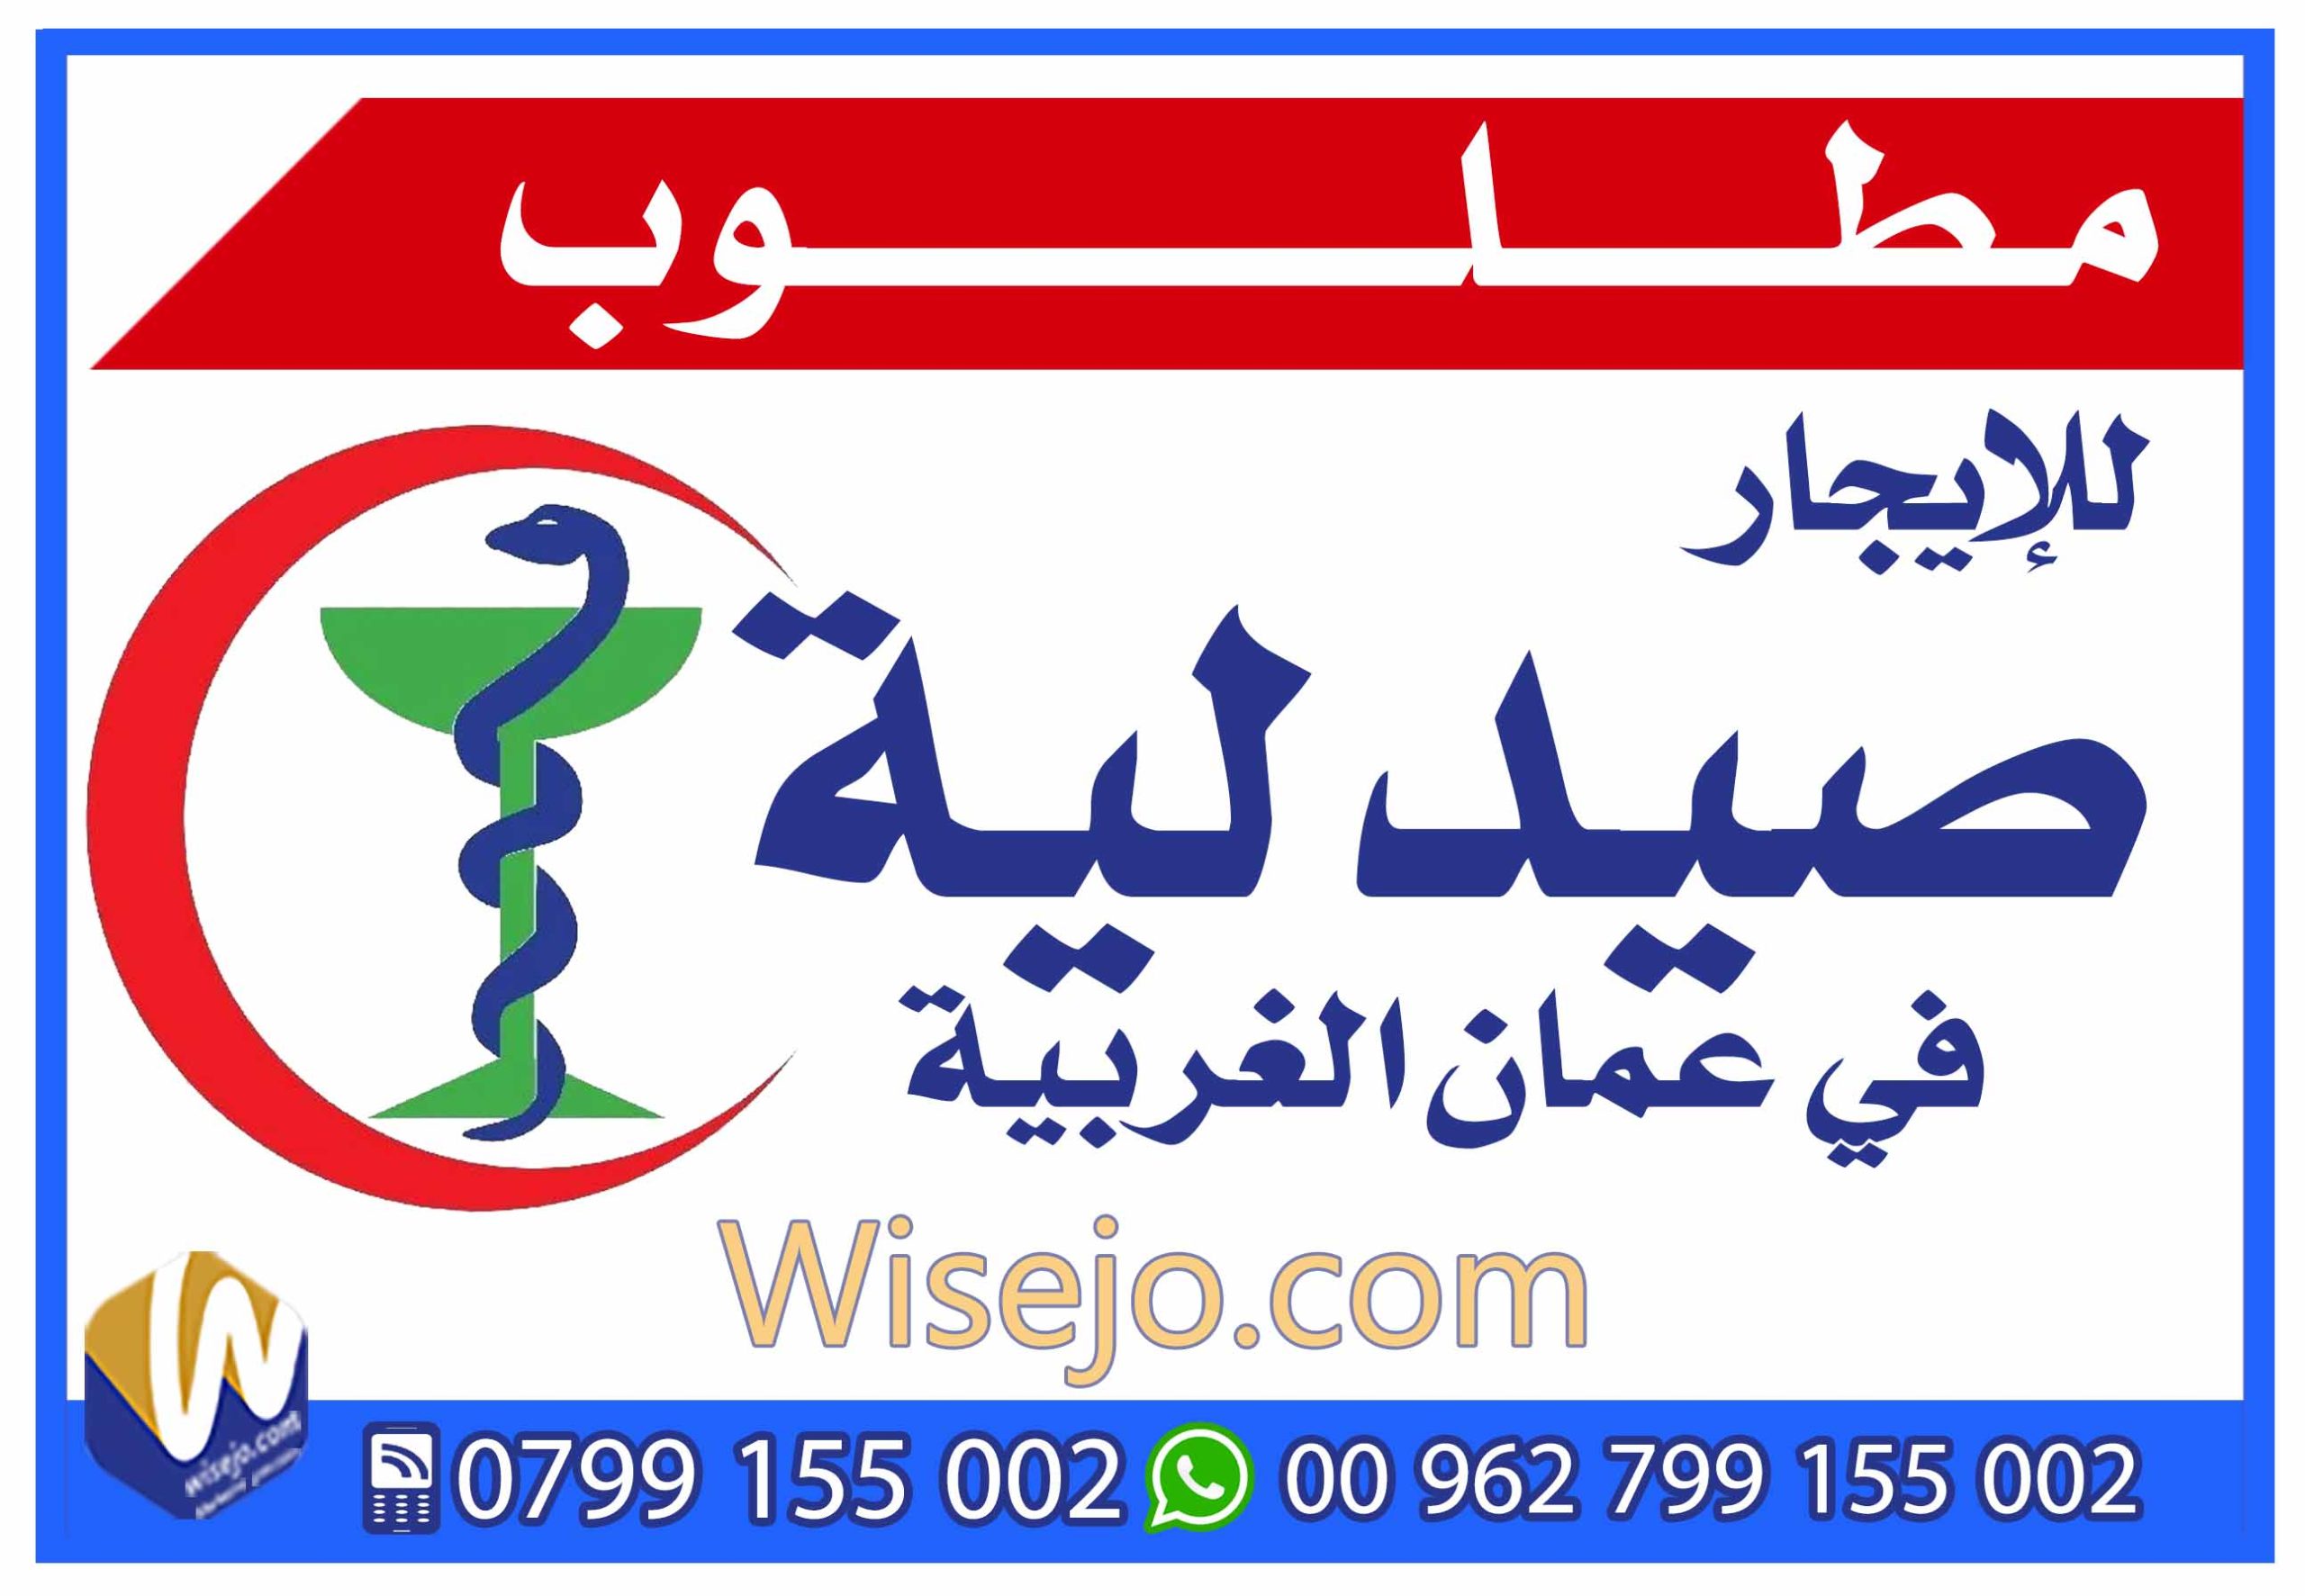 مطلوب صيدلية في عمان الغربية 0799155002